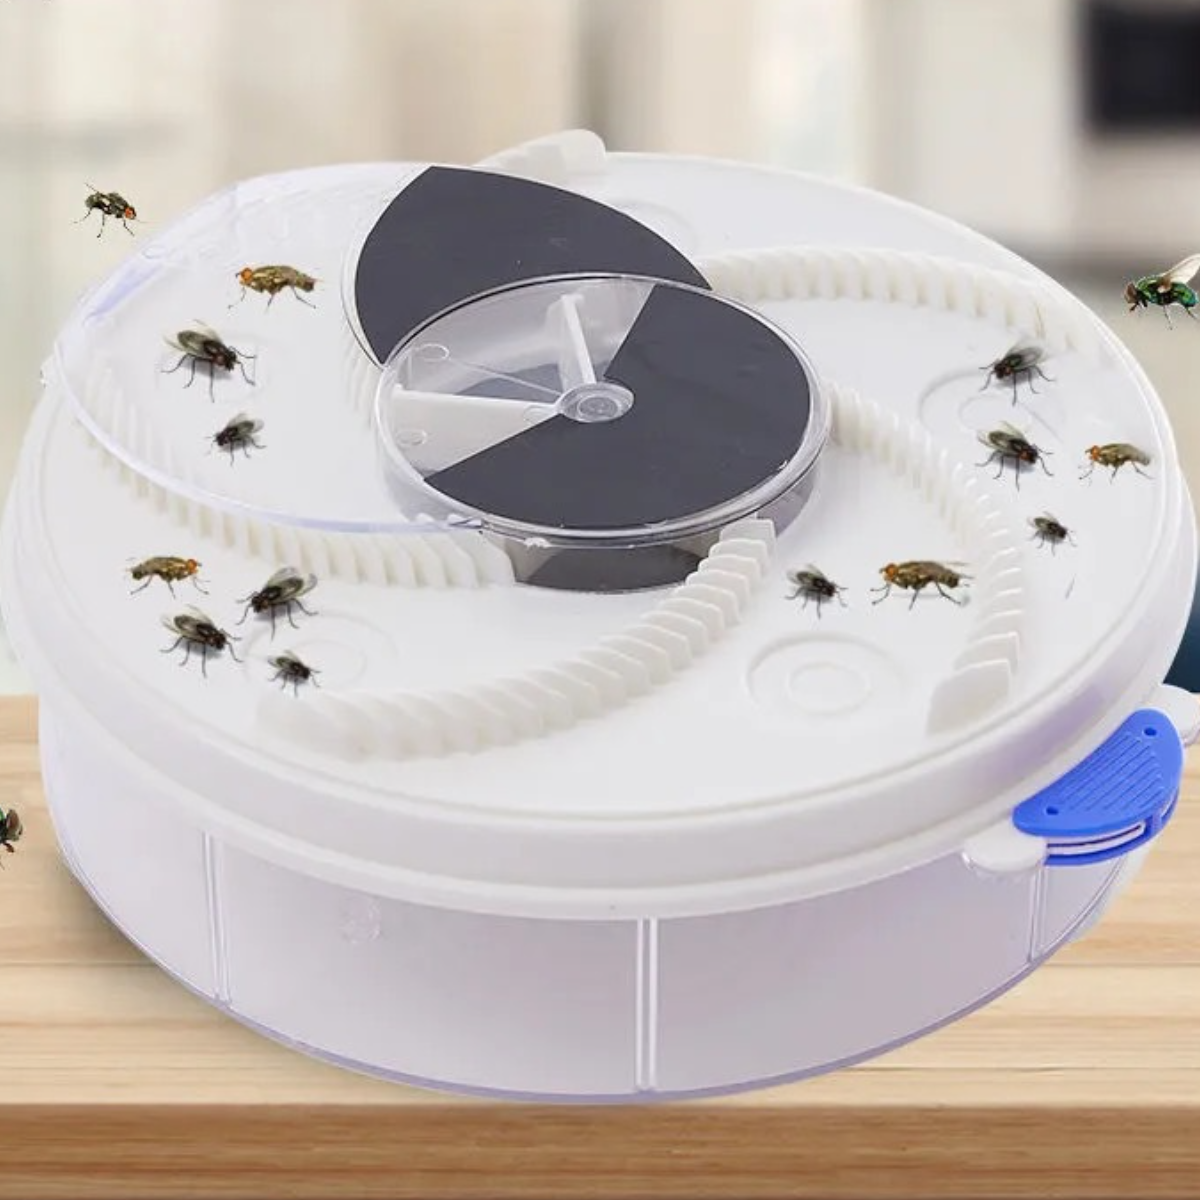 UWOT USB-Vollautomatik-Fliegenfalle-Weiß: Leise und energiesparende Drehfalle Insektenvernichter